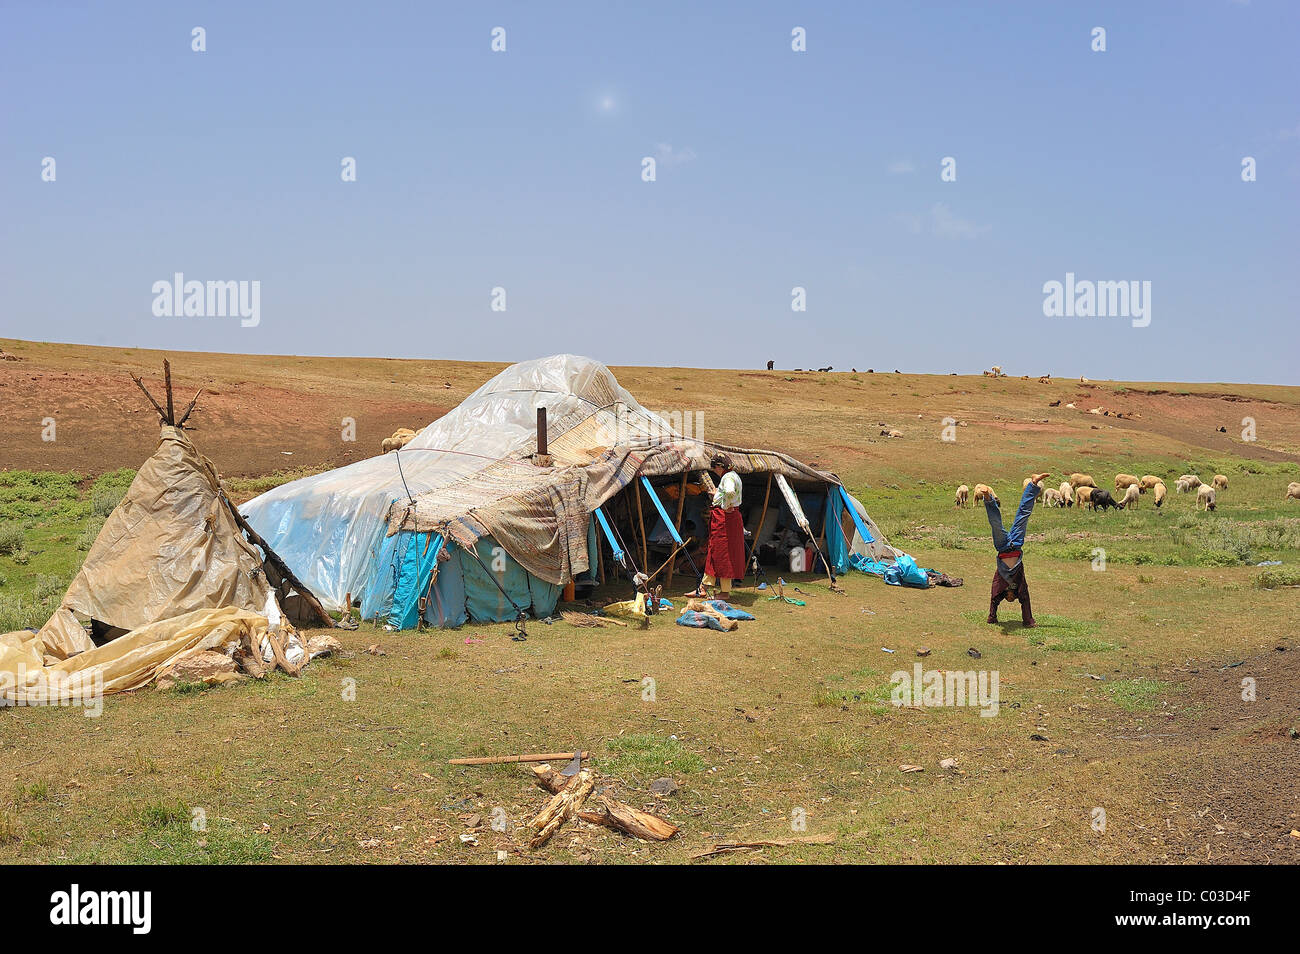 La tente de nomades couverts avec des feuilles de plastique contre la pluie, nomad boy doing a handstand, Moyen Atlas, Maroc, Afrique Banque D'Images